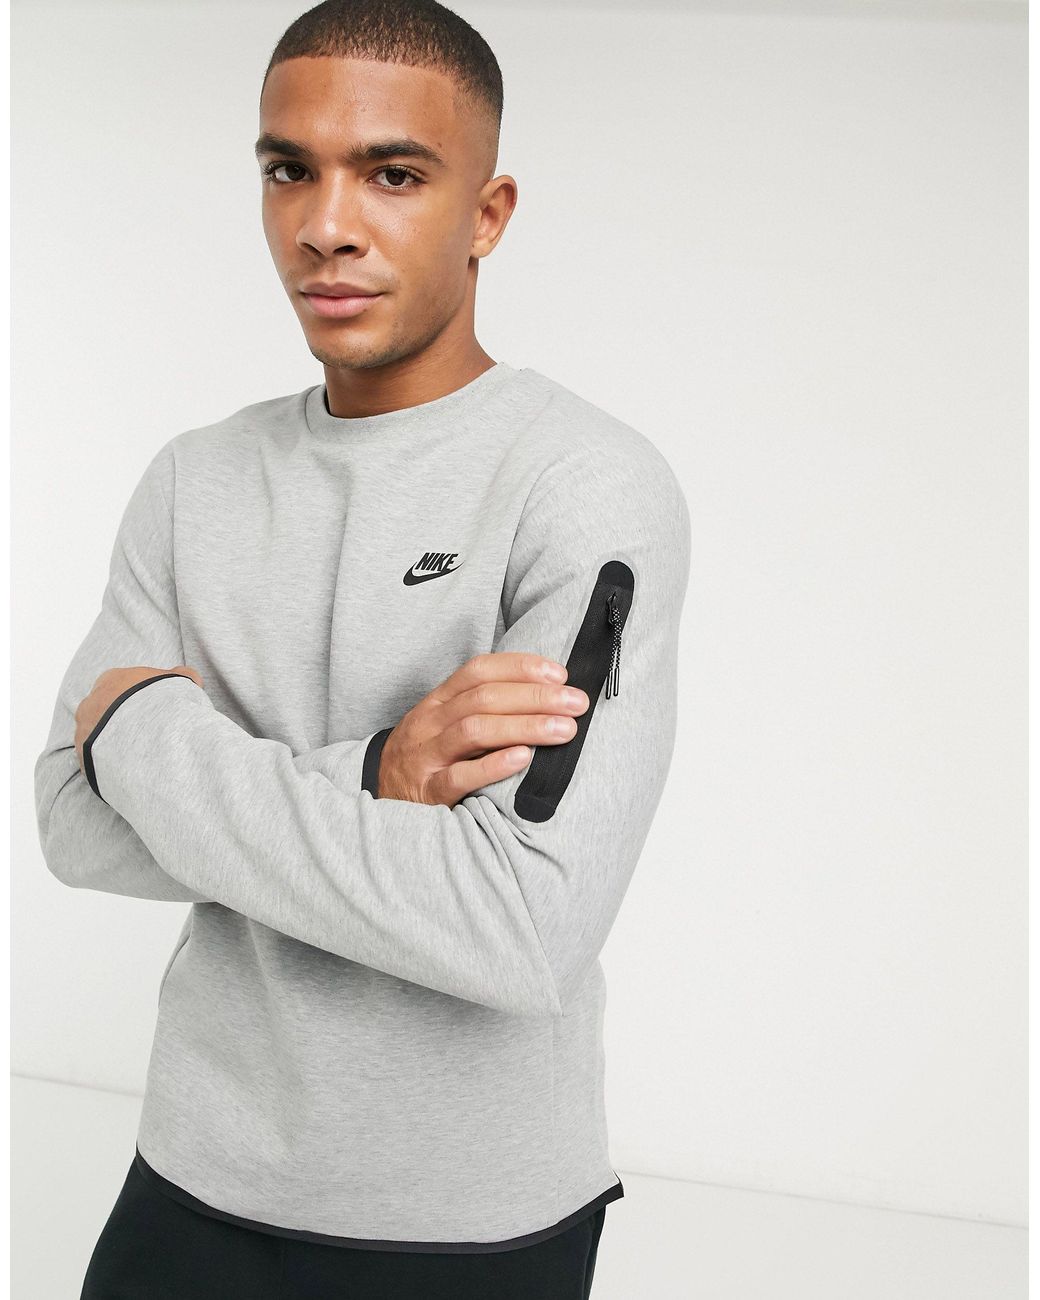 Nike Tech Fleece Crew Neck Sweatshirt in Grey (Gray) for Men - Lyst